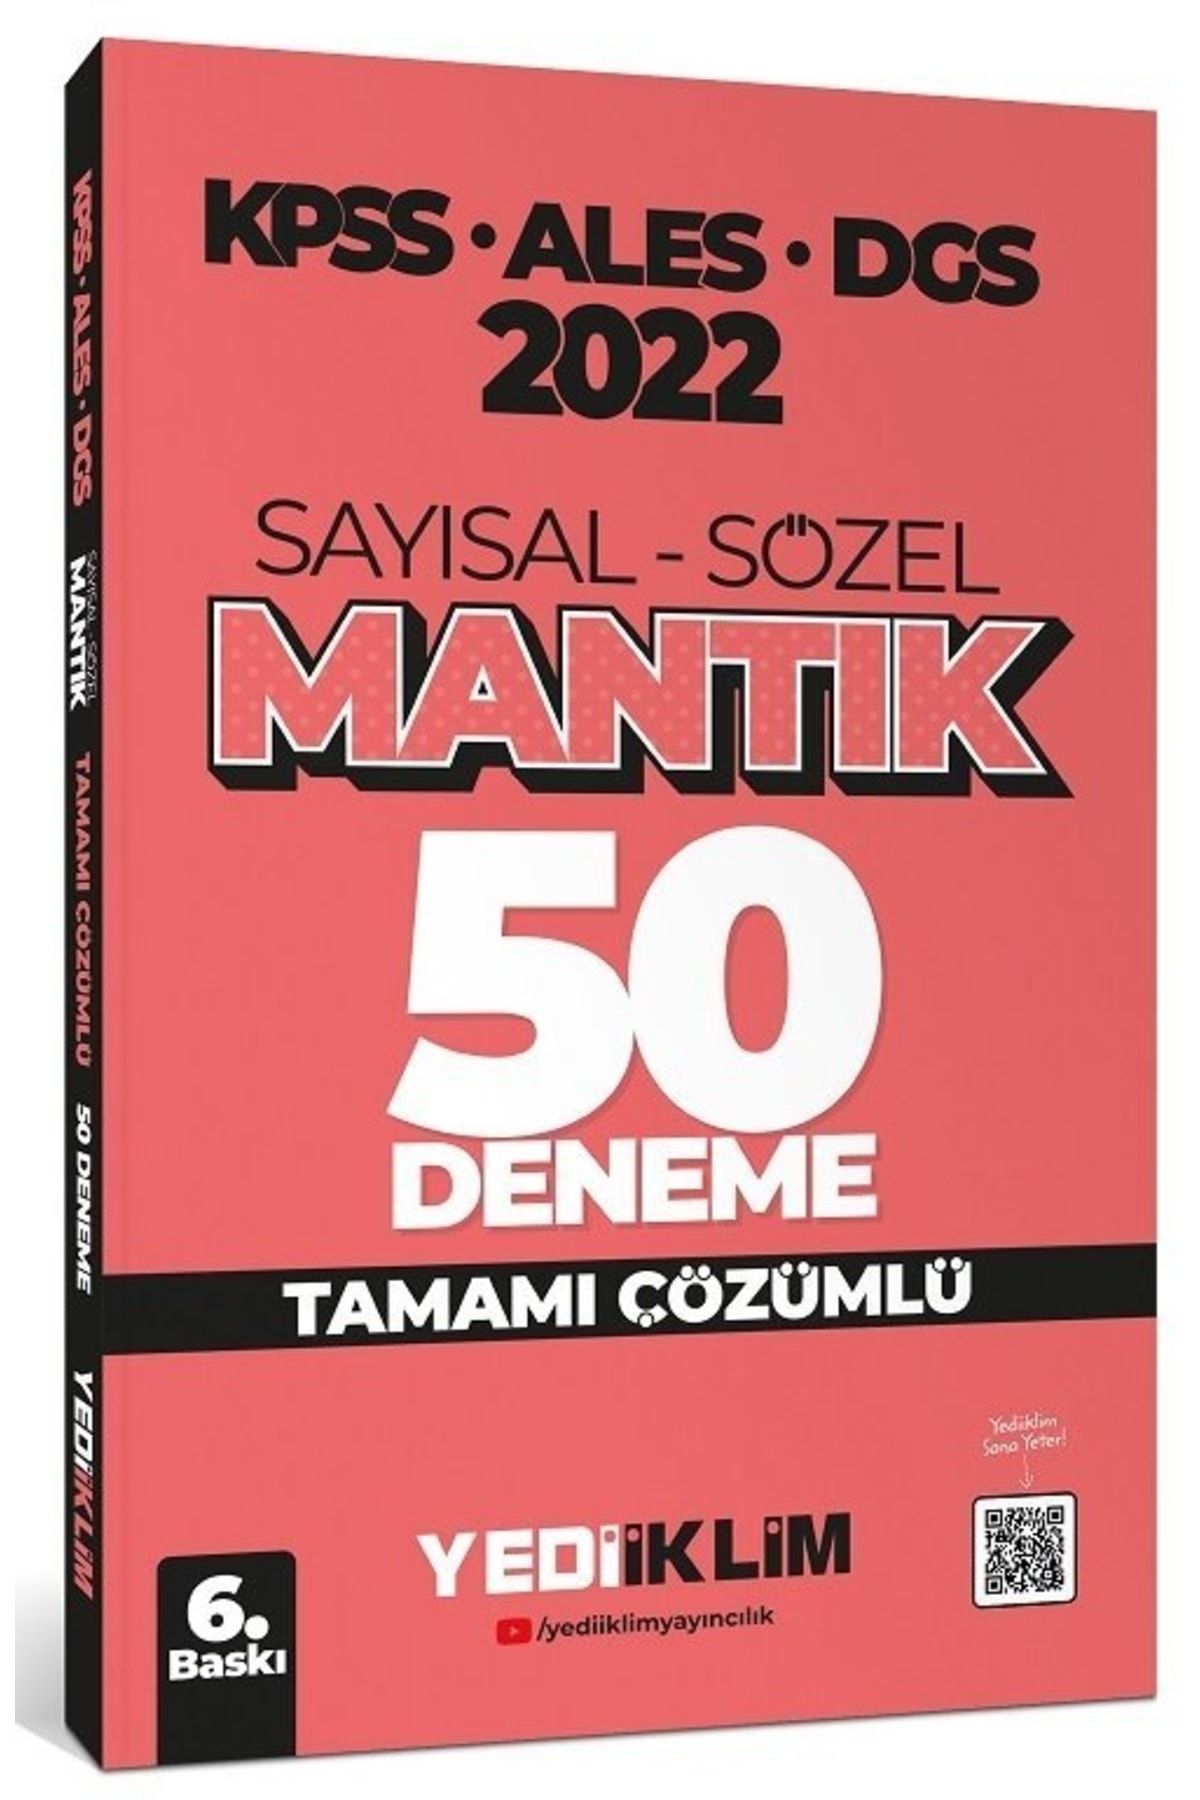 Yediiklim Yayınları 2022 Kpss-ales-dgs Sayısal Sözel Mantık Tamam